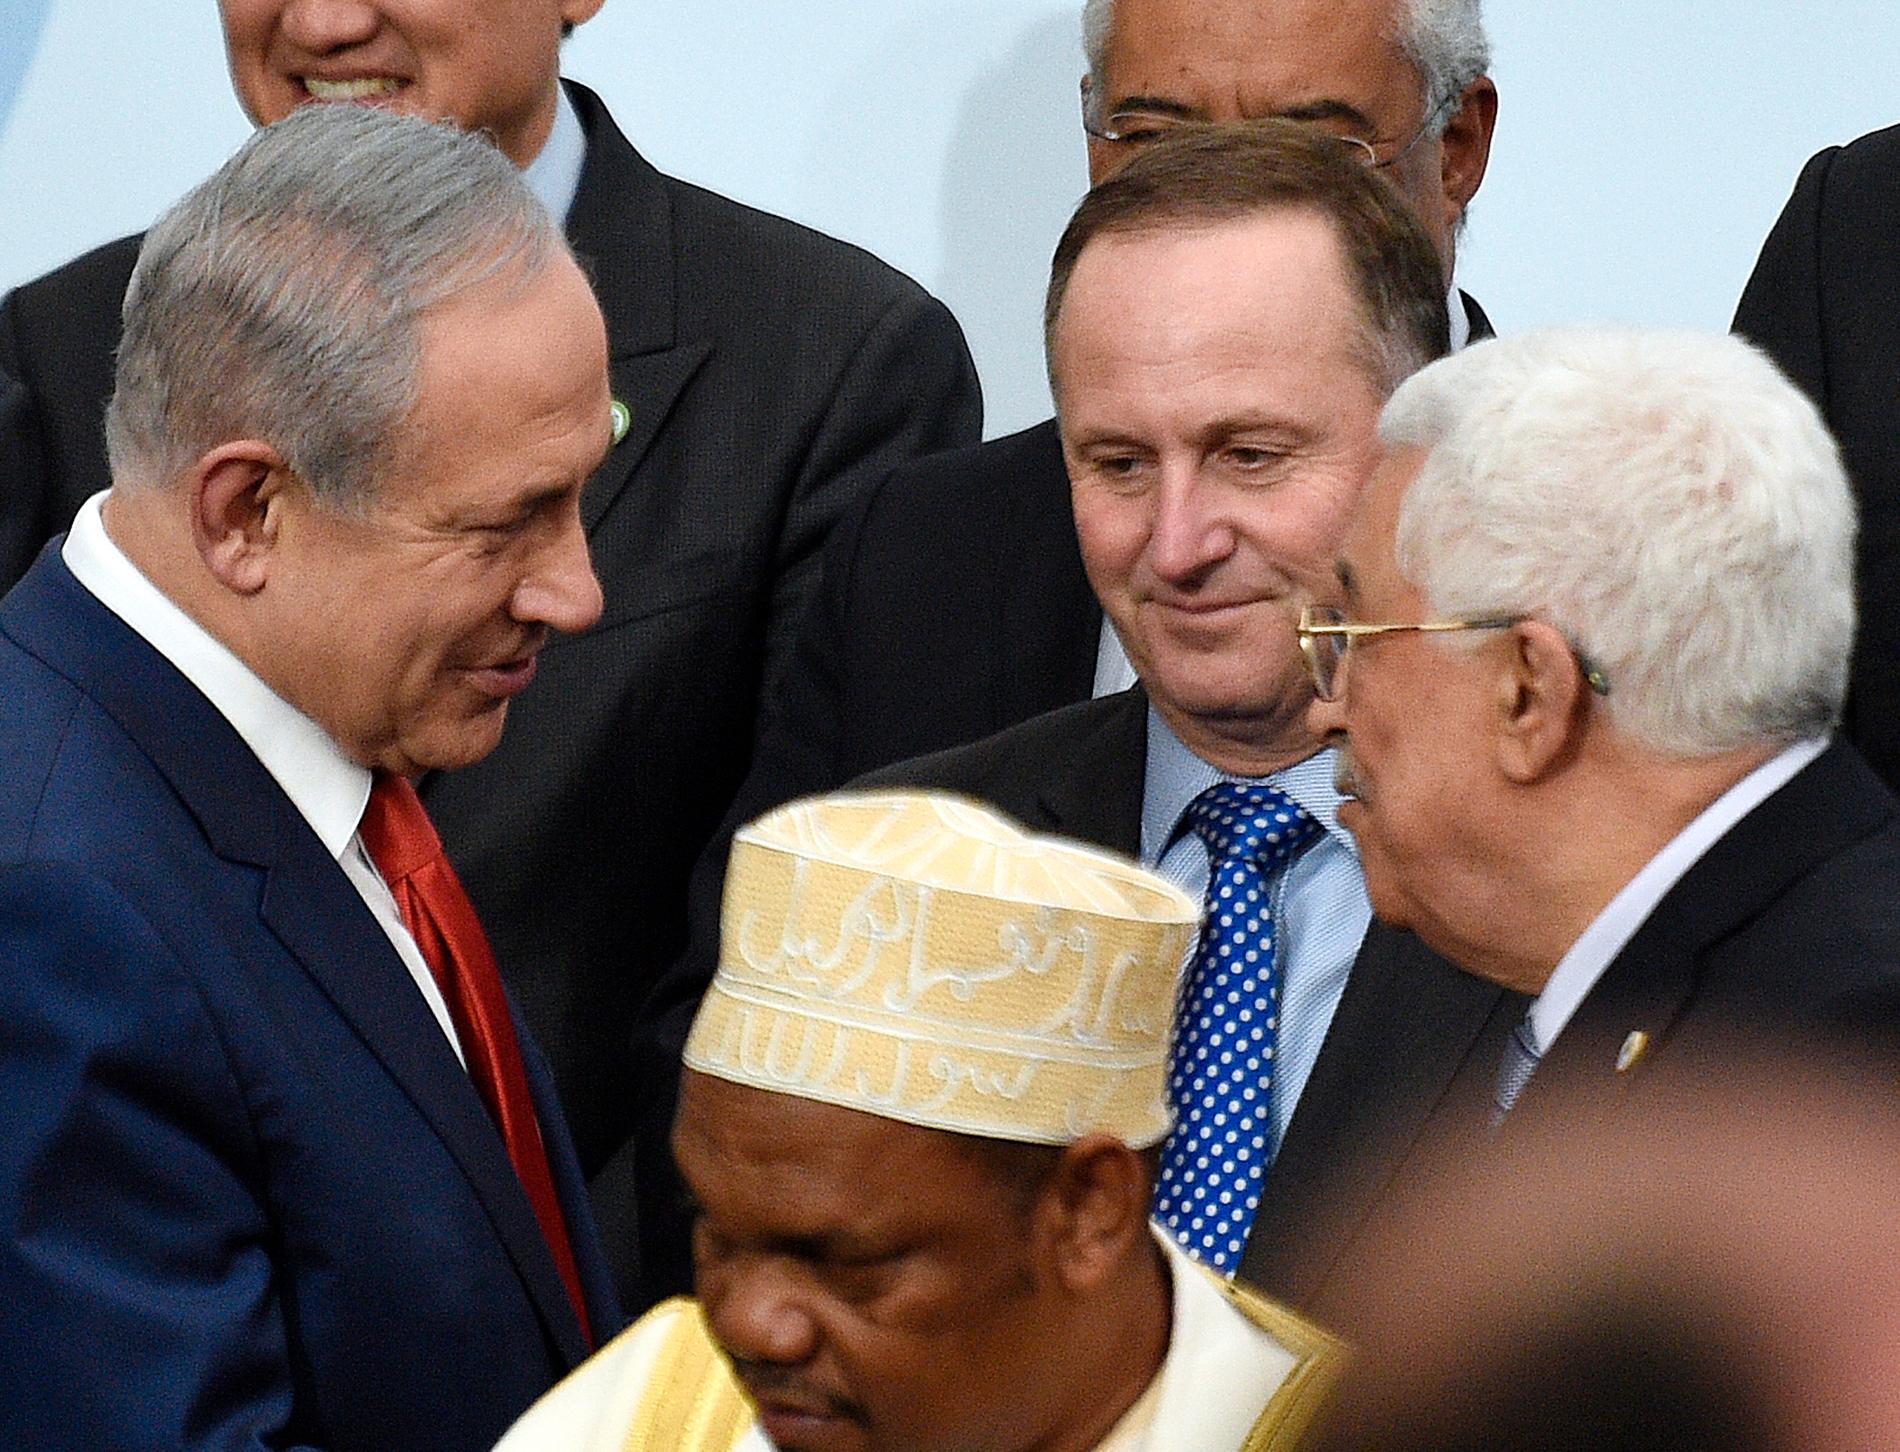 Läget är låst mellan Israels premiärminister Benjamin Netanyahu (till vänster) och palestiniernas president Mahmud Abbas (höger). Här möttes de dock i samband med klimattoppmötet i Paris 2015.